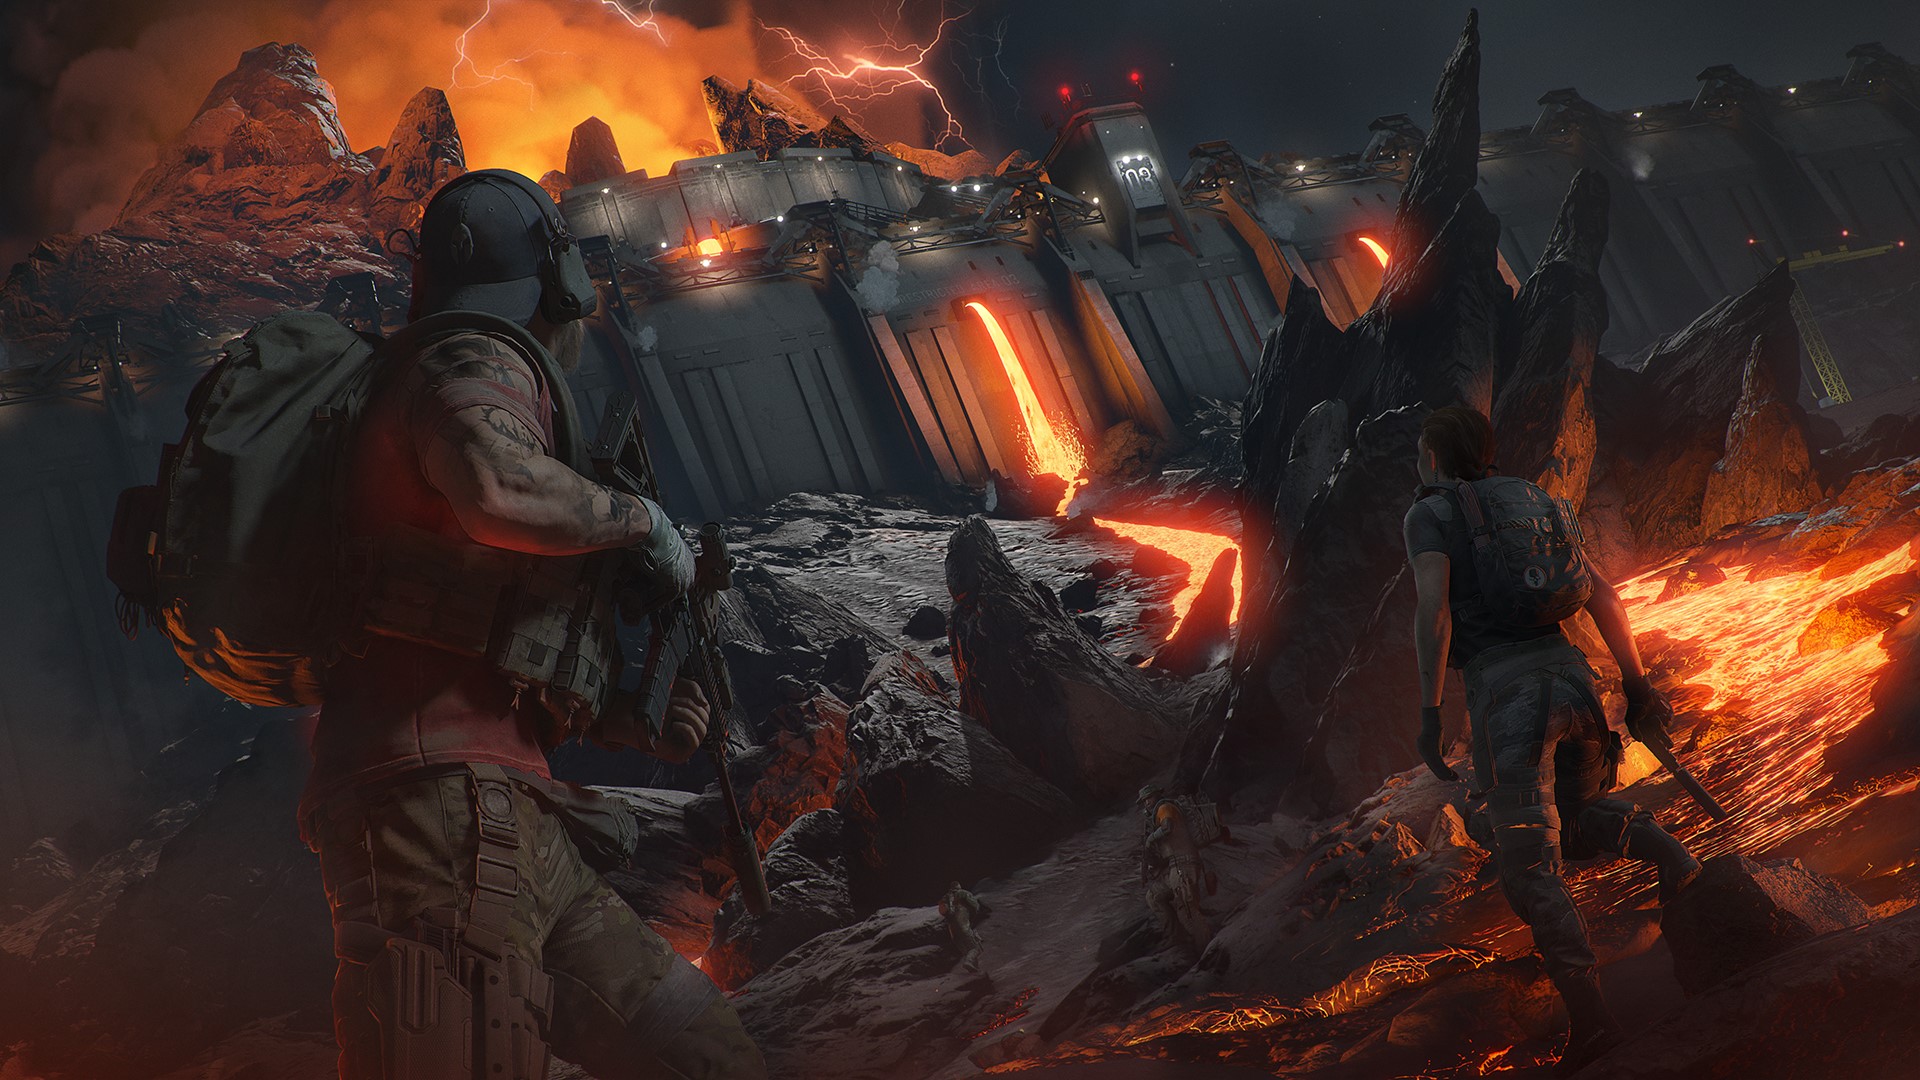 Duchy muszą wrócić do Ghost Recon Breakpoint: Ubisoft wprowadza pierwszy w serji Raid "Project Titan"